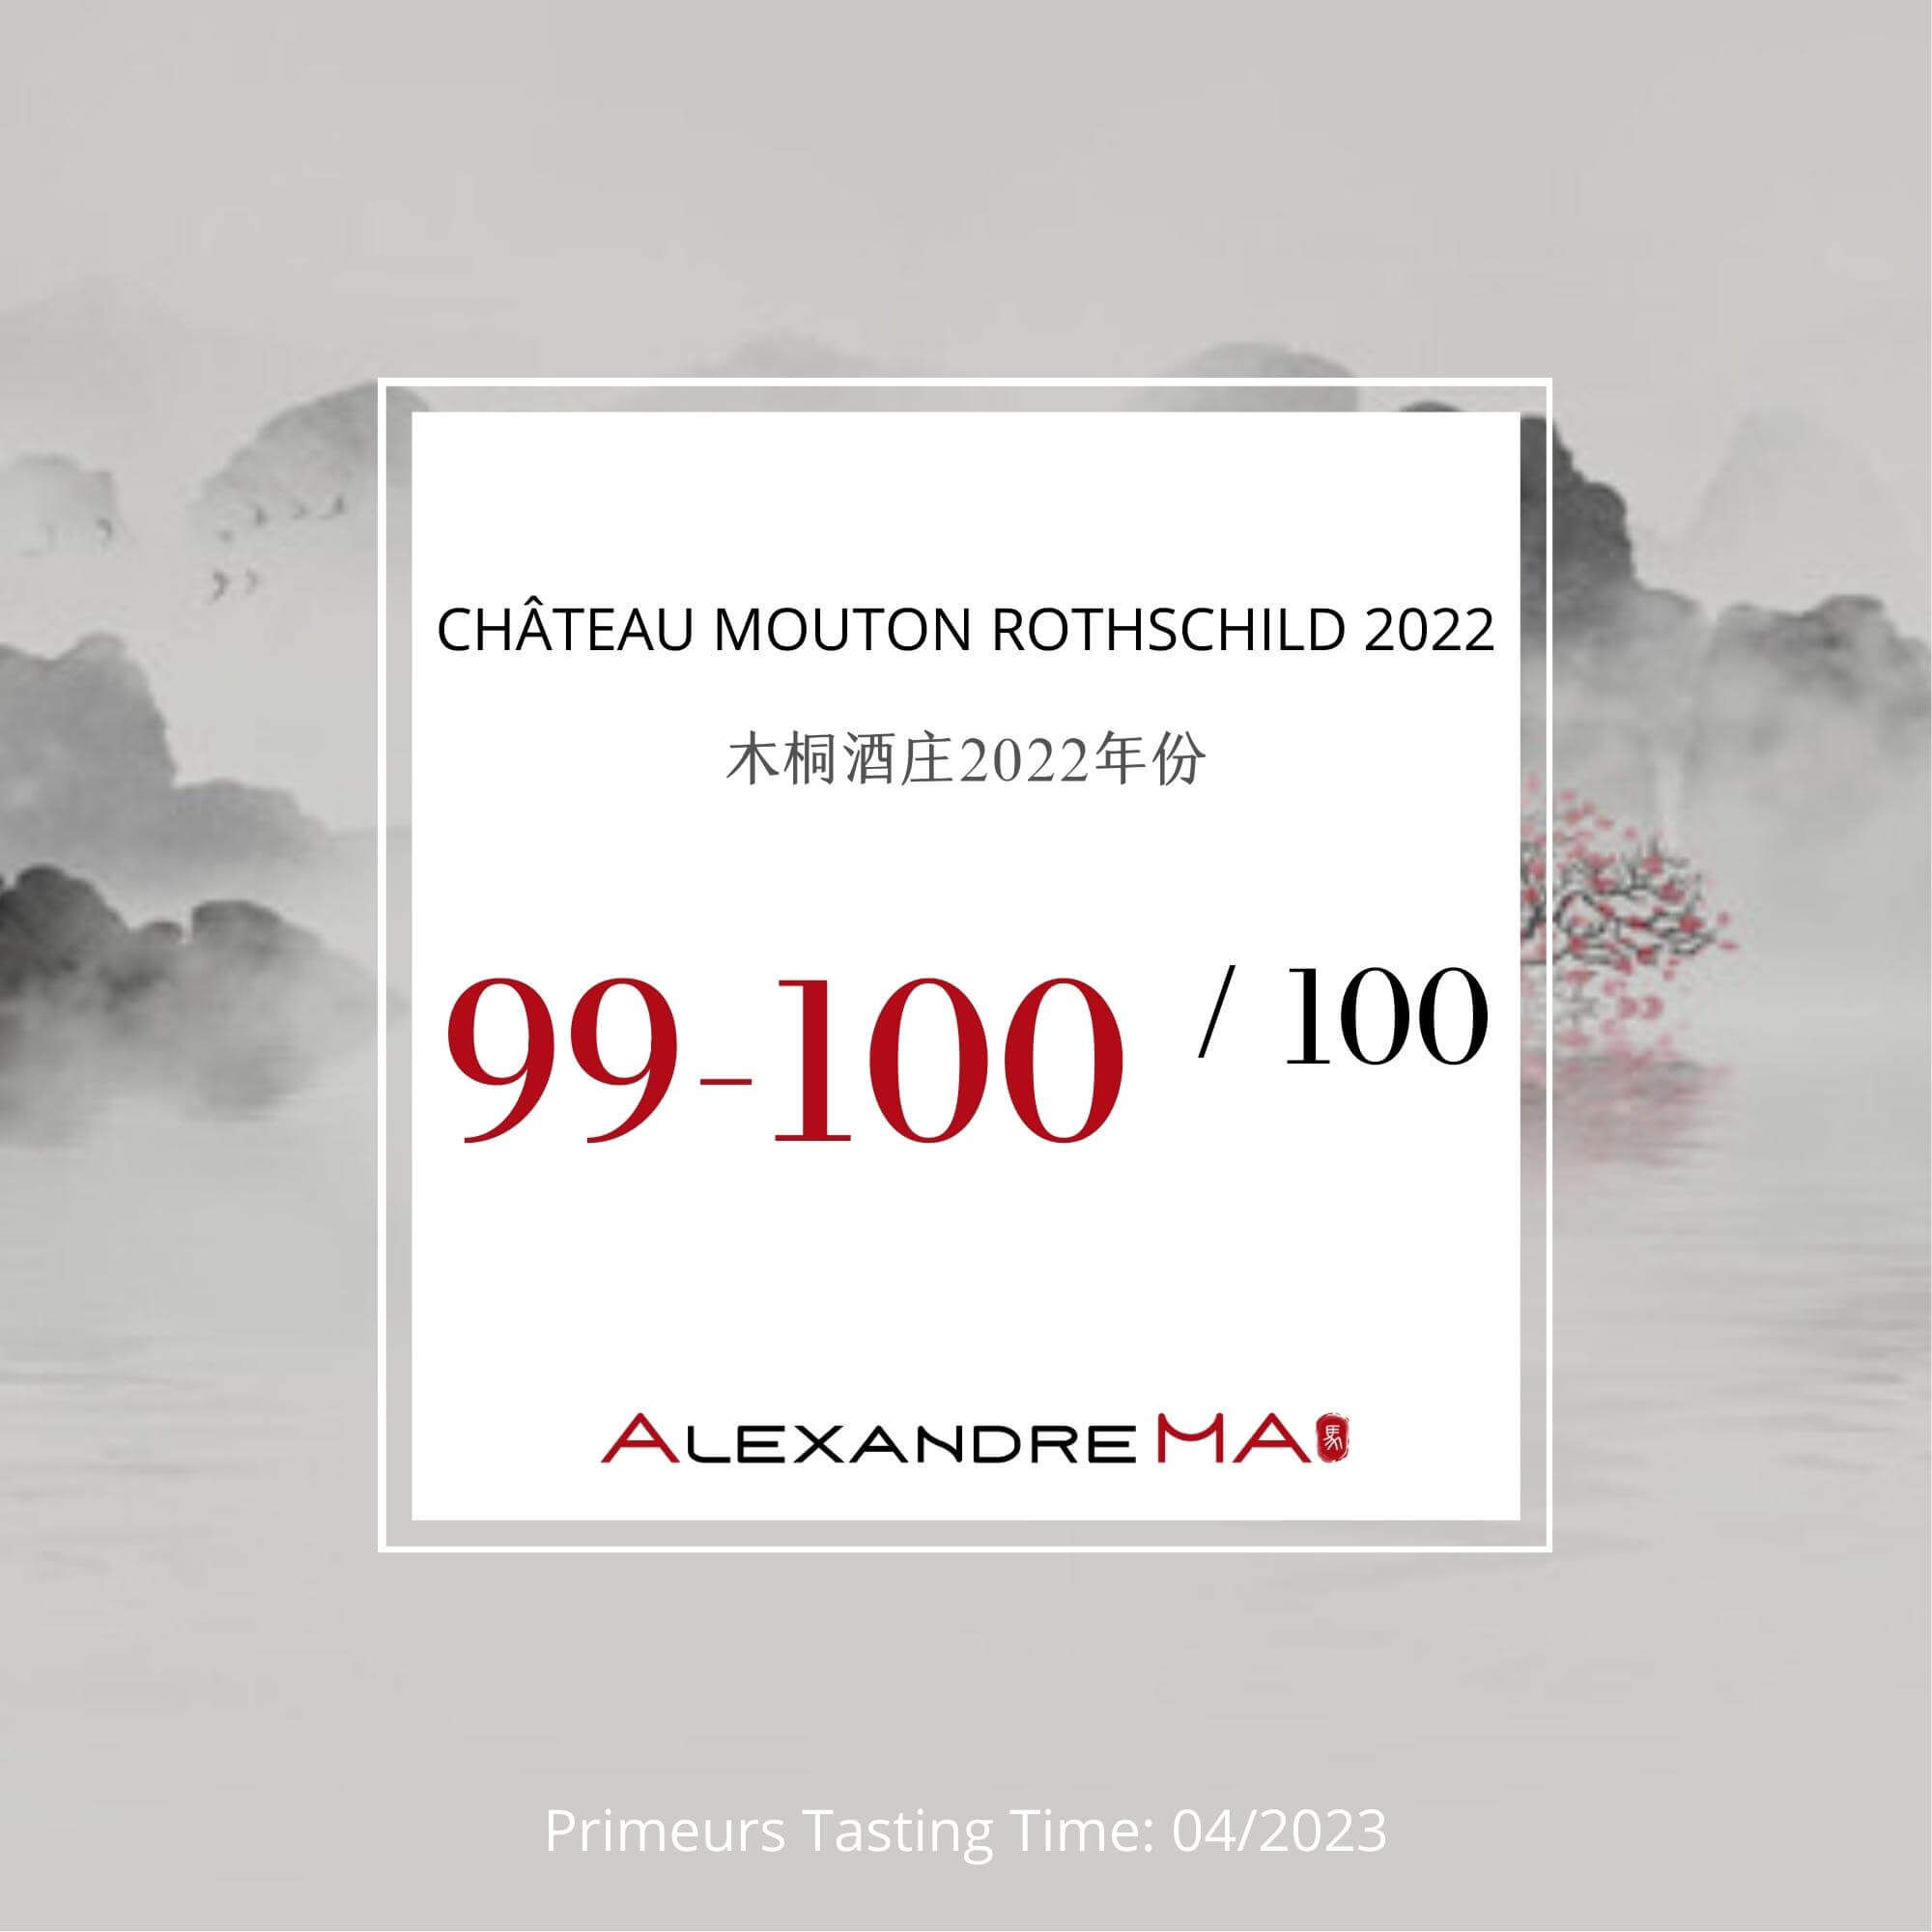 Château Mouton Rothschild 2022 Primeurs - Alexandre MA